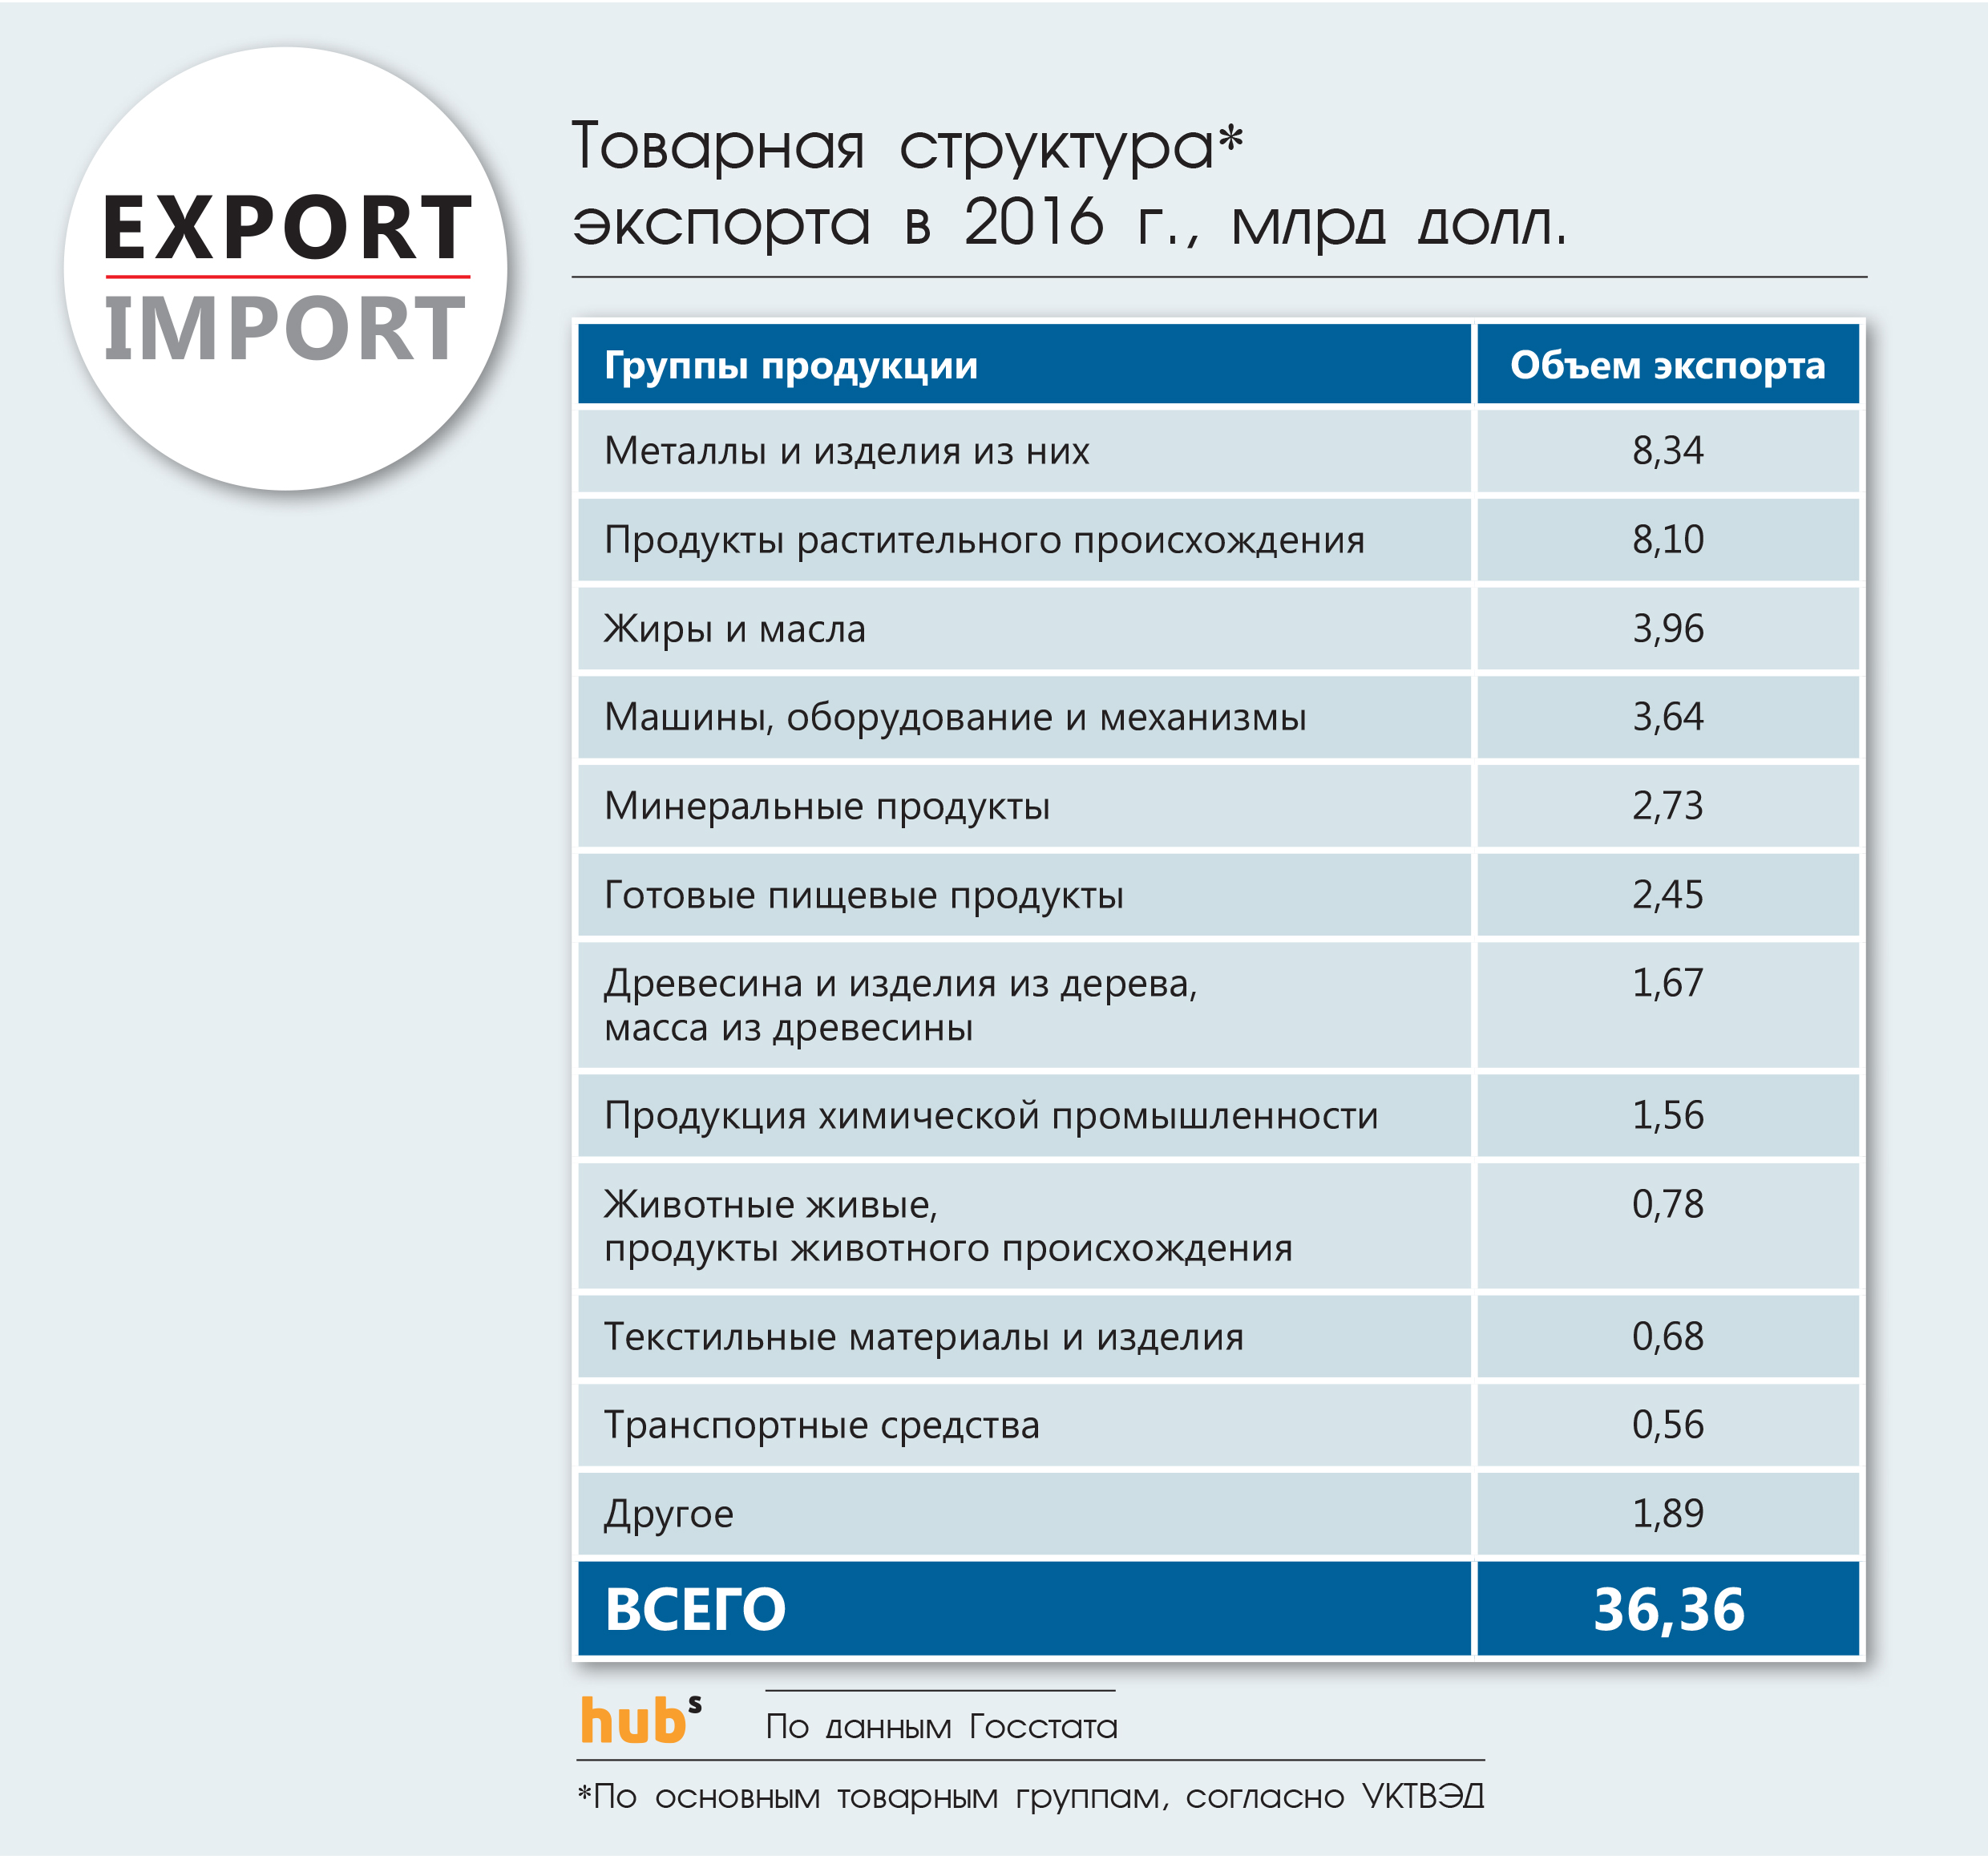 Товарная структура экспорта в 2016 г